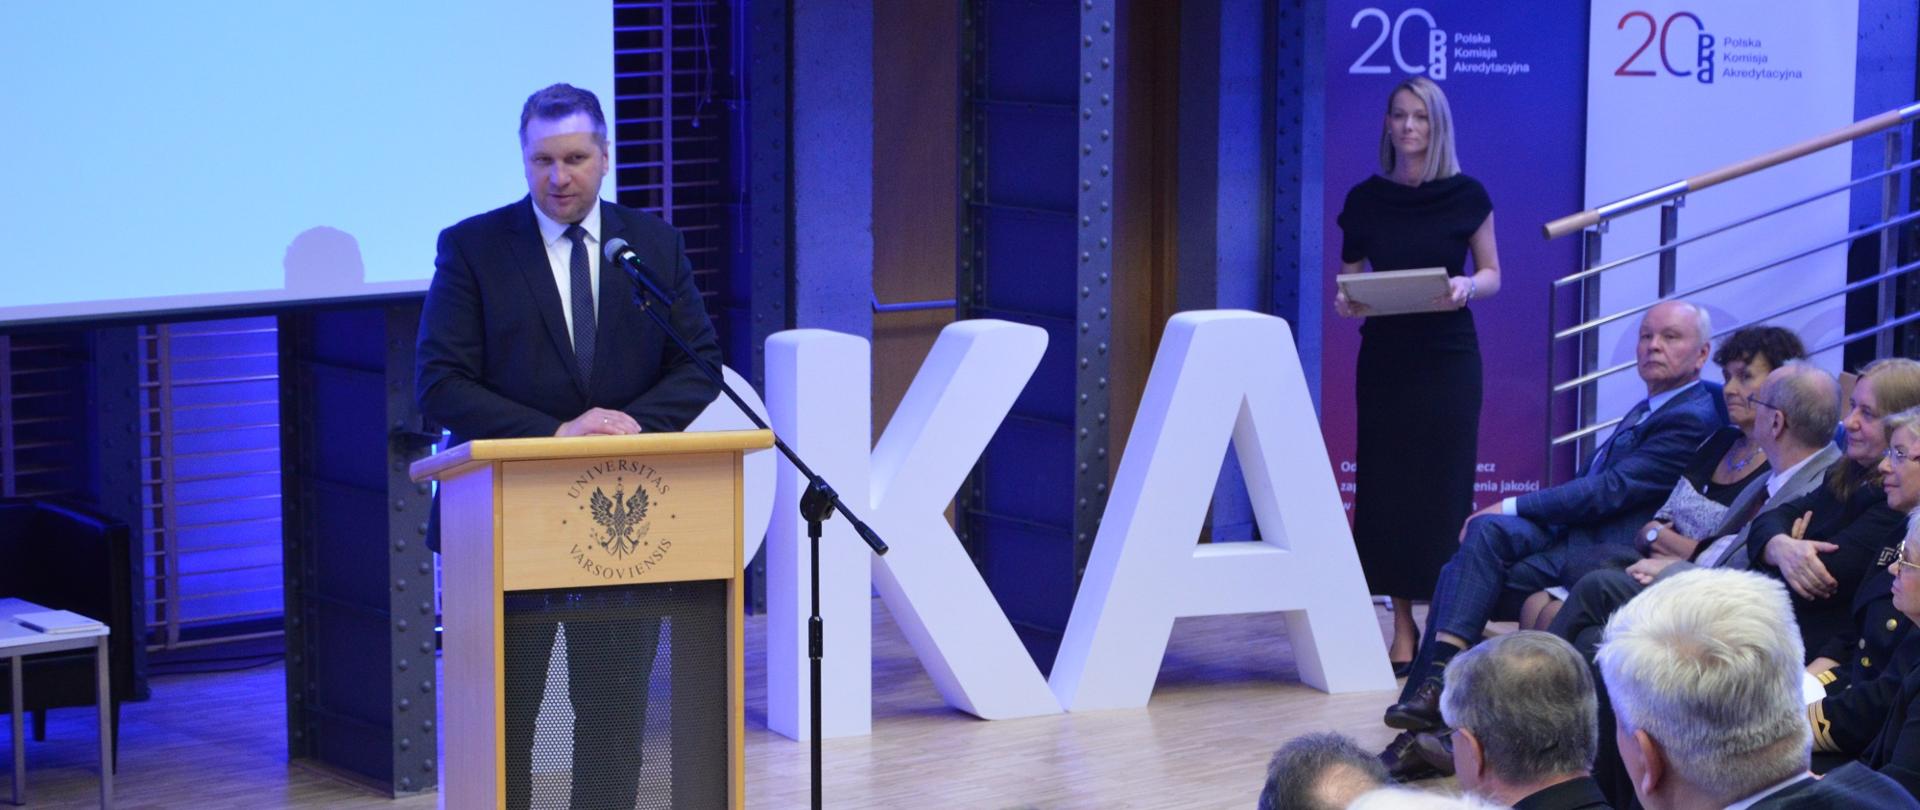 Minister Czarnek stoi przy mównicy i mówi do mikrofonu, przed nim na niebieskich krzesłach siedzą elegancko ubrani ludzie.